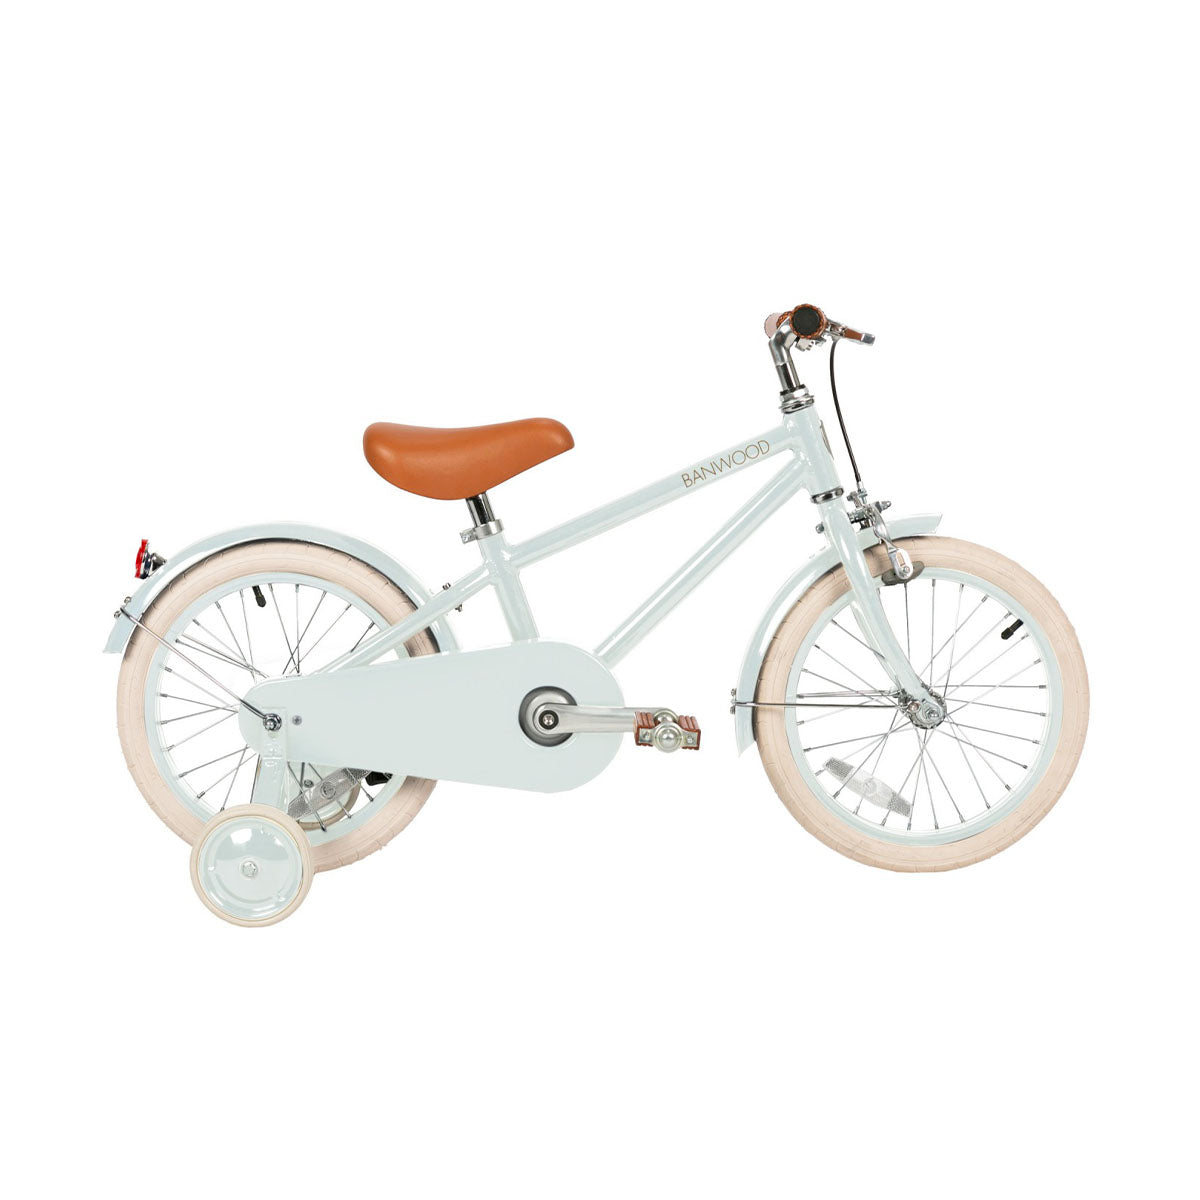 Deze leuke Banwood fiets in classic vintage pale mint is een superleuke kinderfiets met een retro design. Deze fiets heeft een Scandi look en heeft unieke trappers van palissanderhout. Ook heeft de fiets een mooie lichtgroene kleur. VanZus